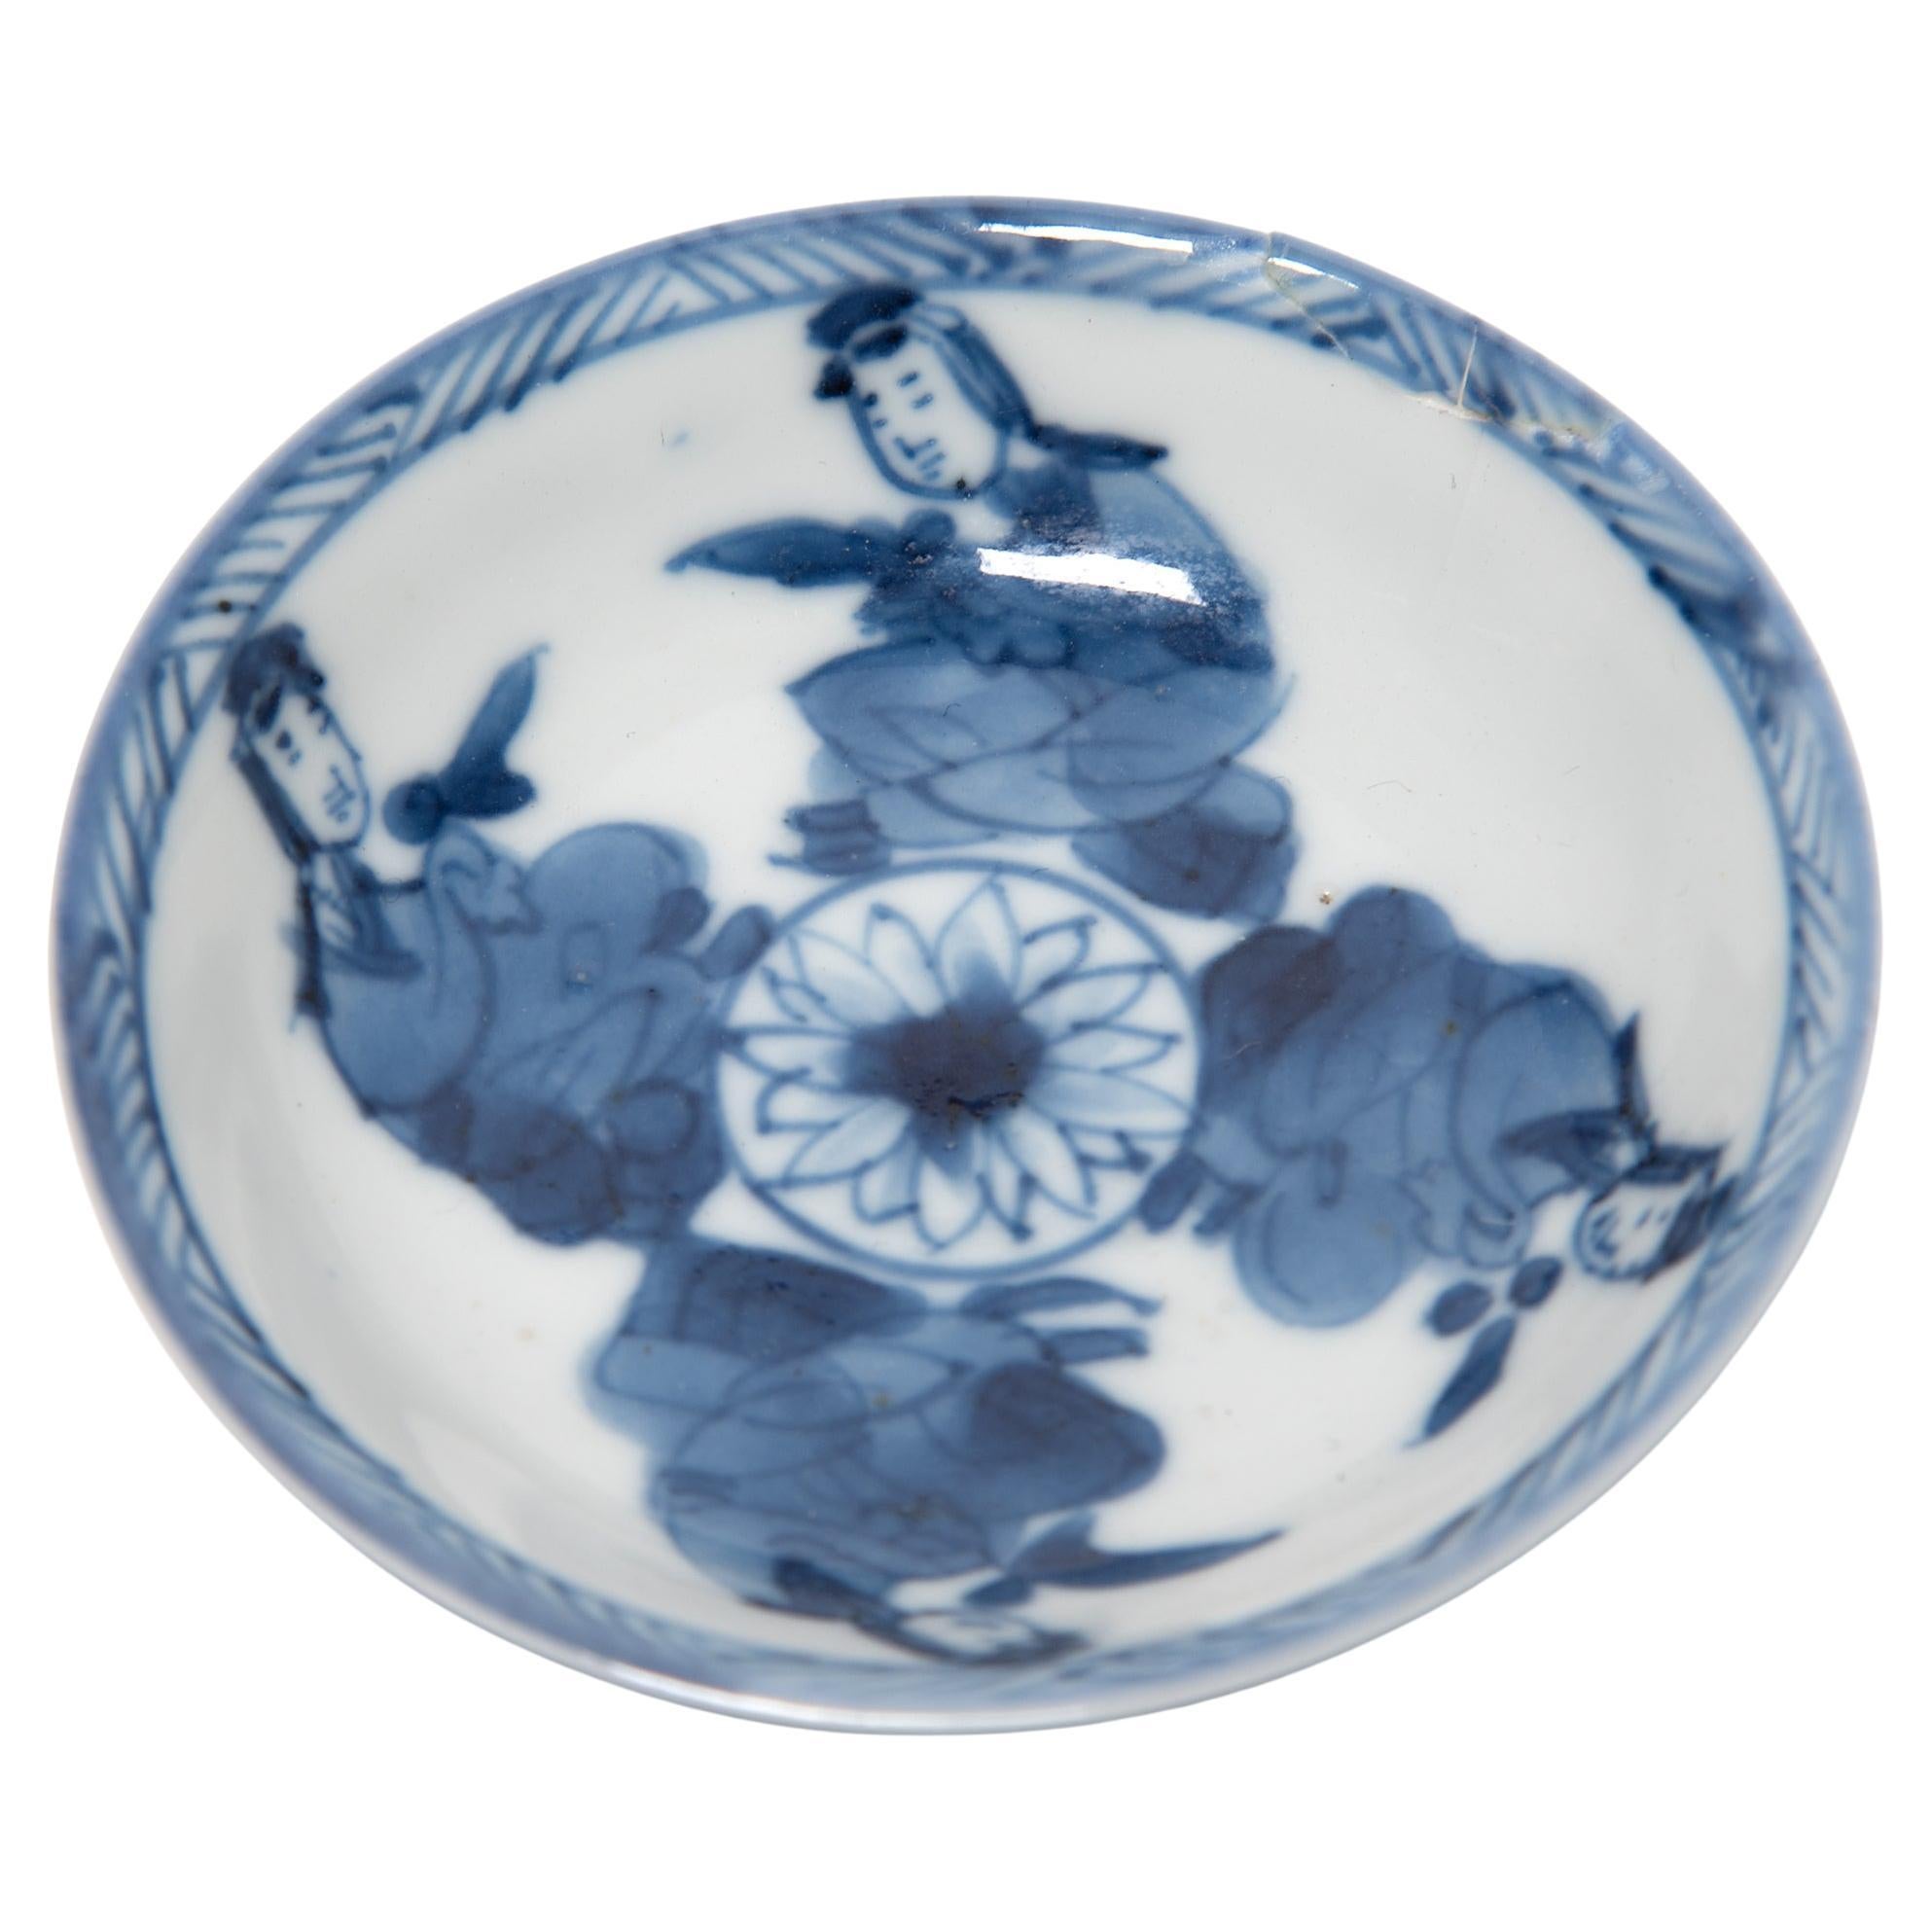 Petite Chinese Blue and White Dish, C. 1850